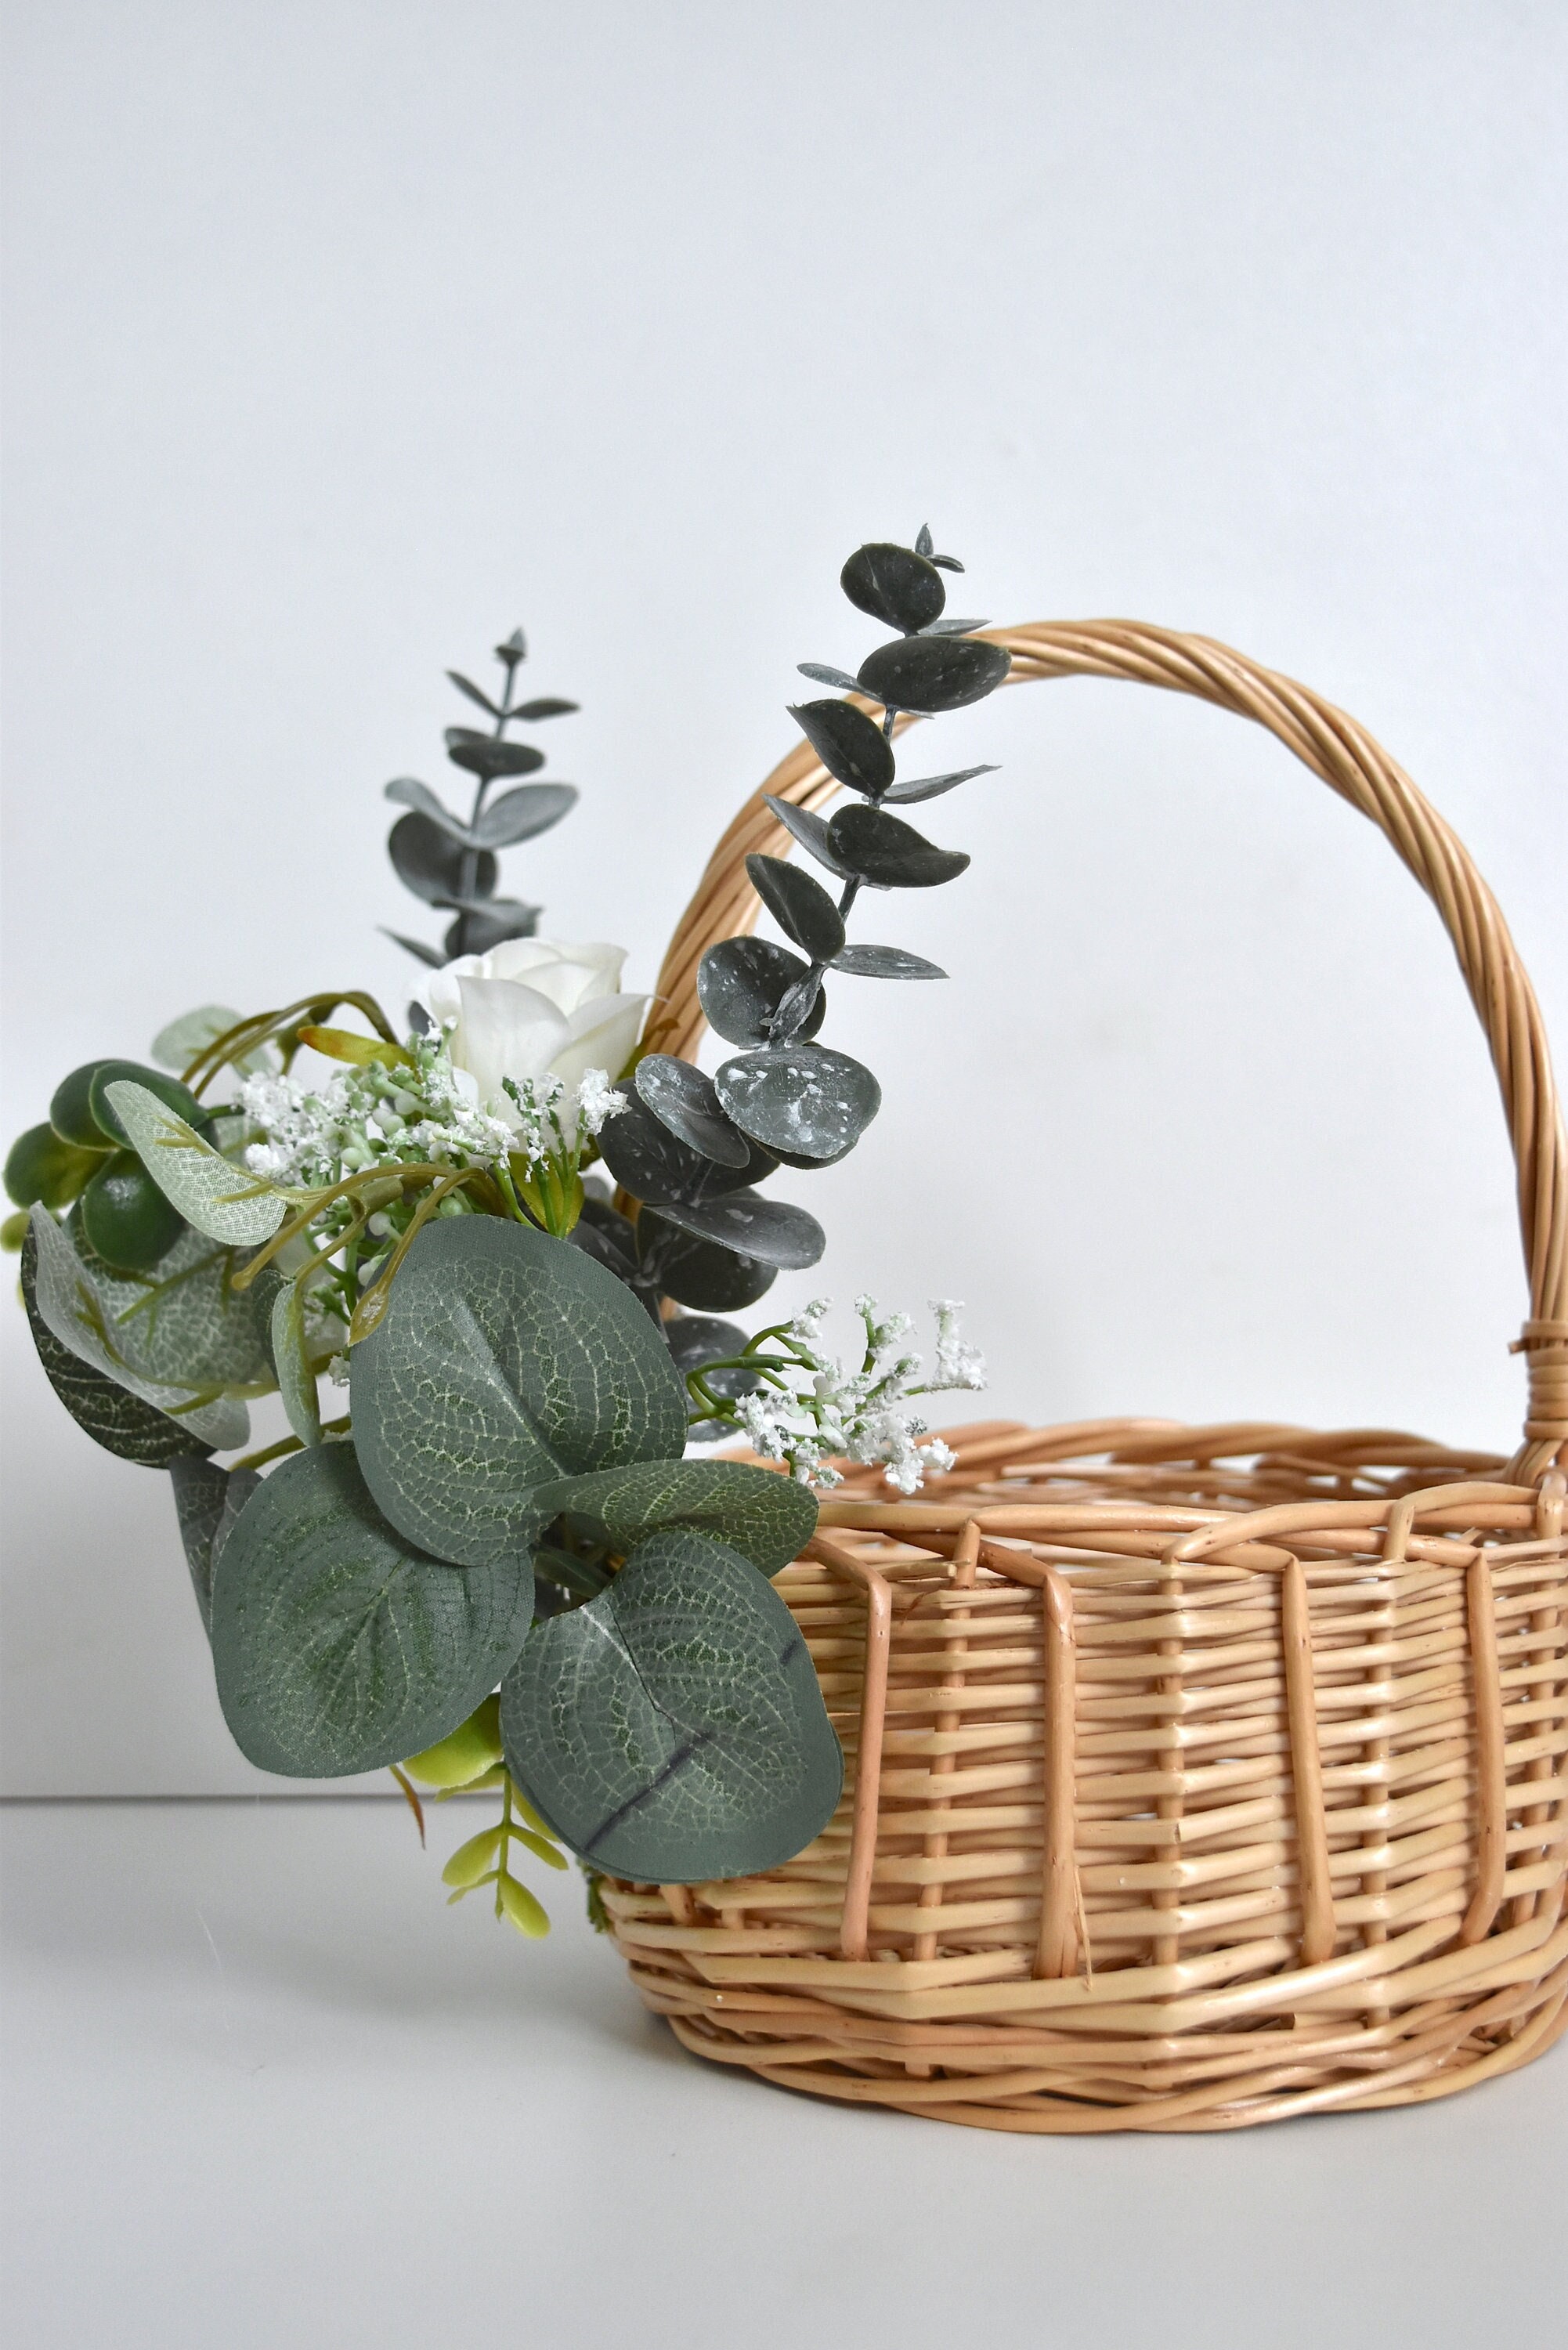 Monland Flower Girl Basket White Flower Basket Wedding Flower Basket Bow Bride Wedding Flower Basket 